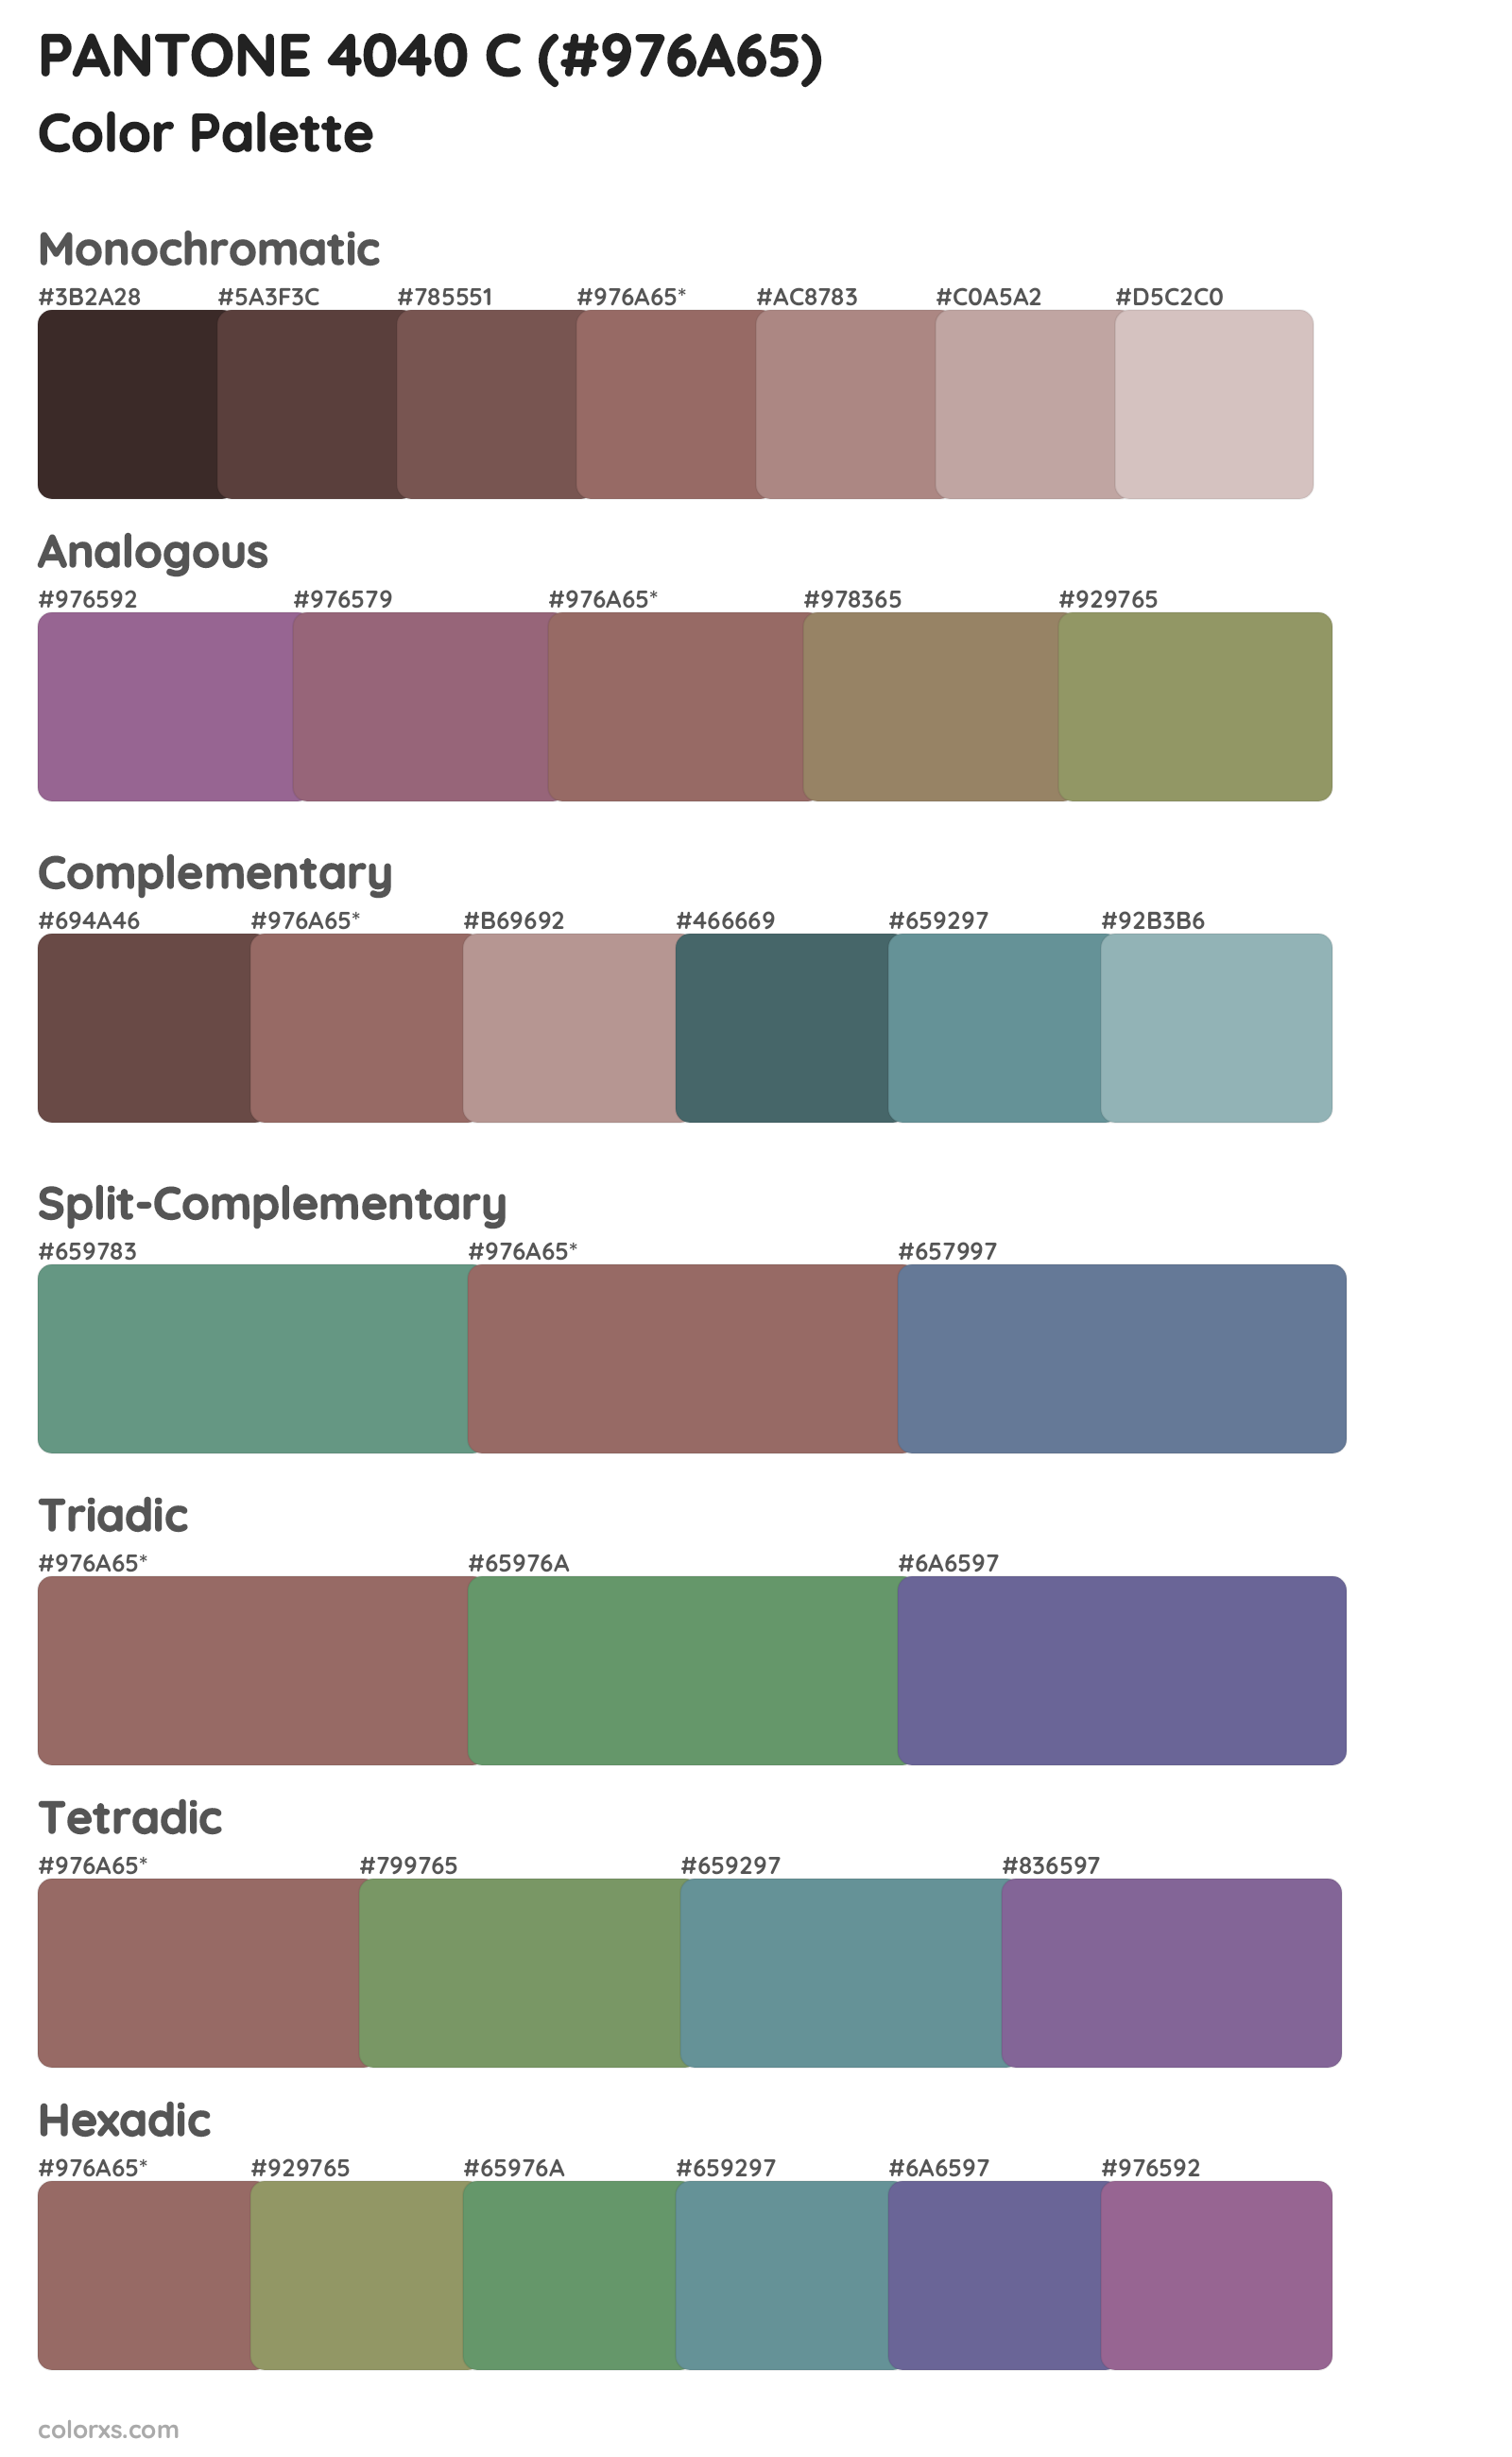 PANTONE 4040 C Color Scheme Palettes